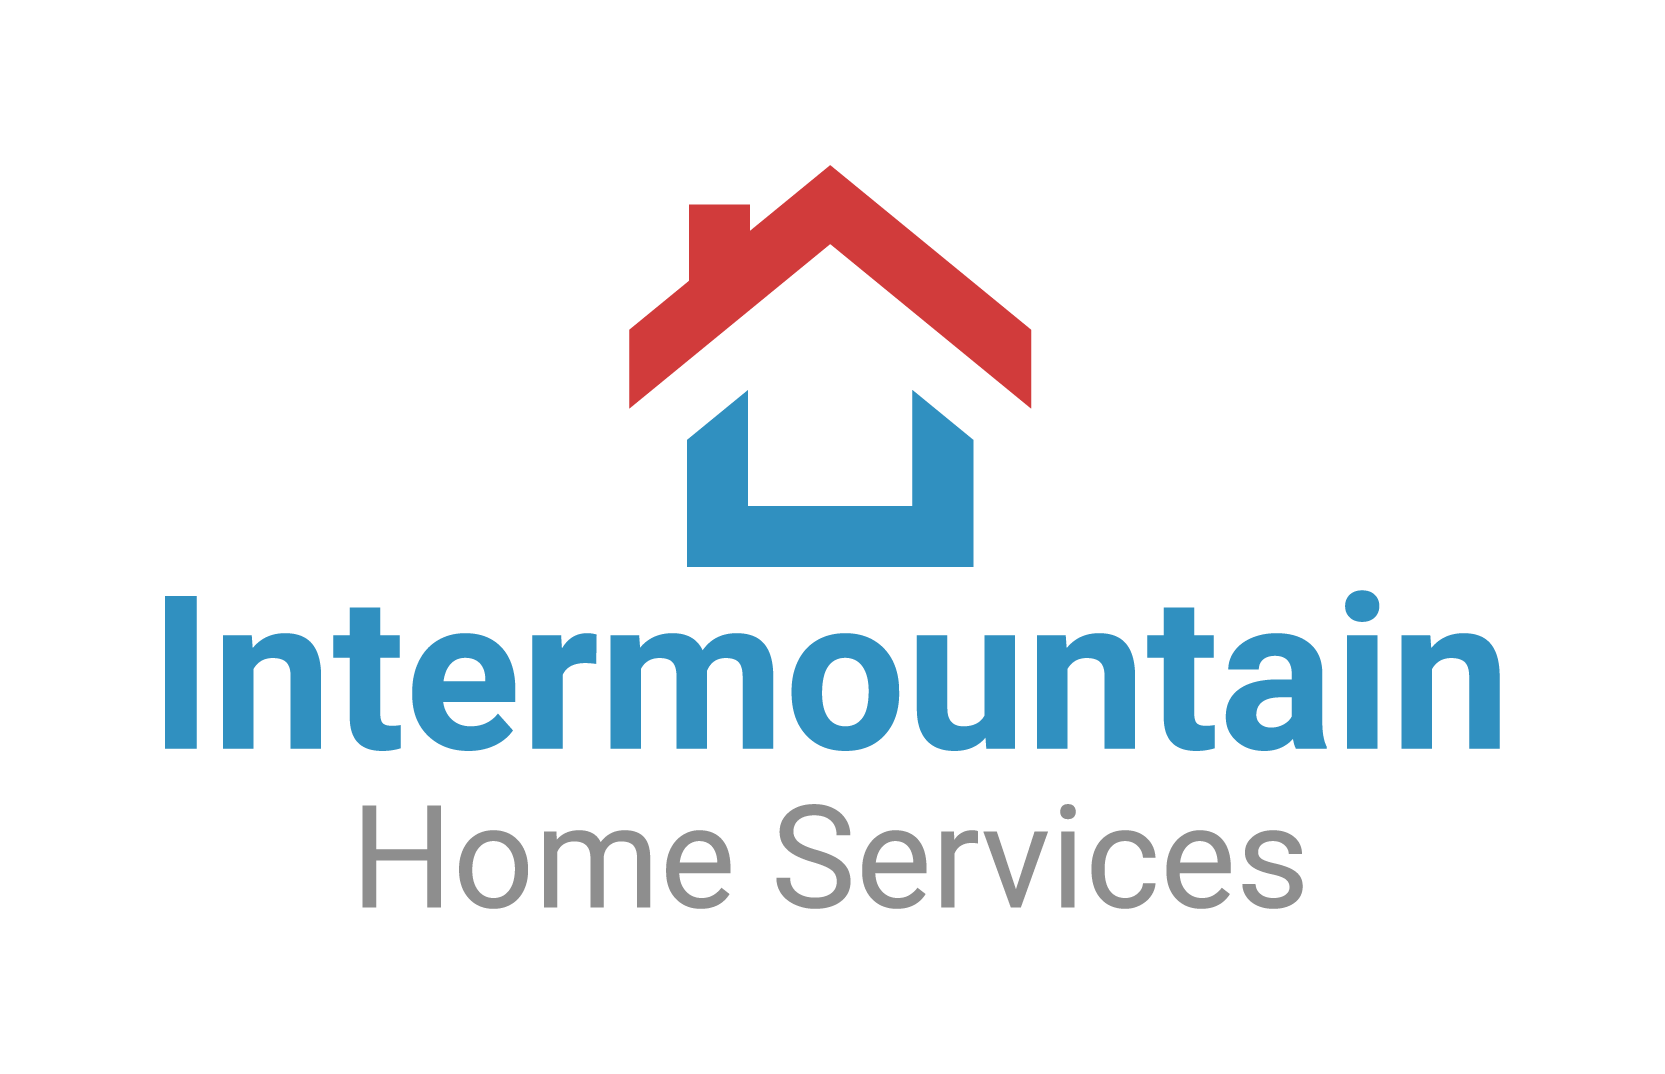 Premium Vector | Home services logo,home care logo template.